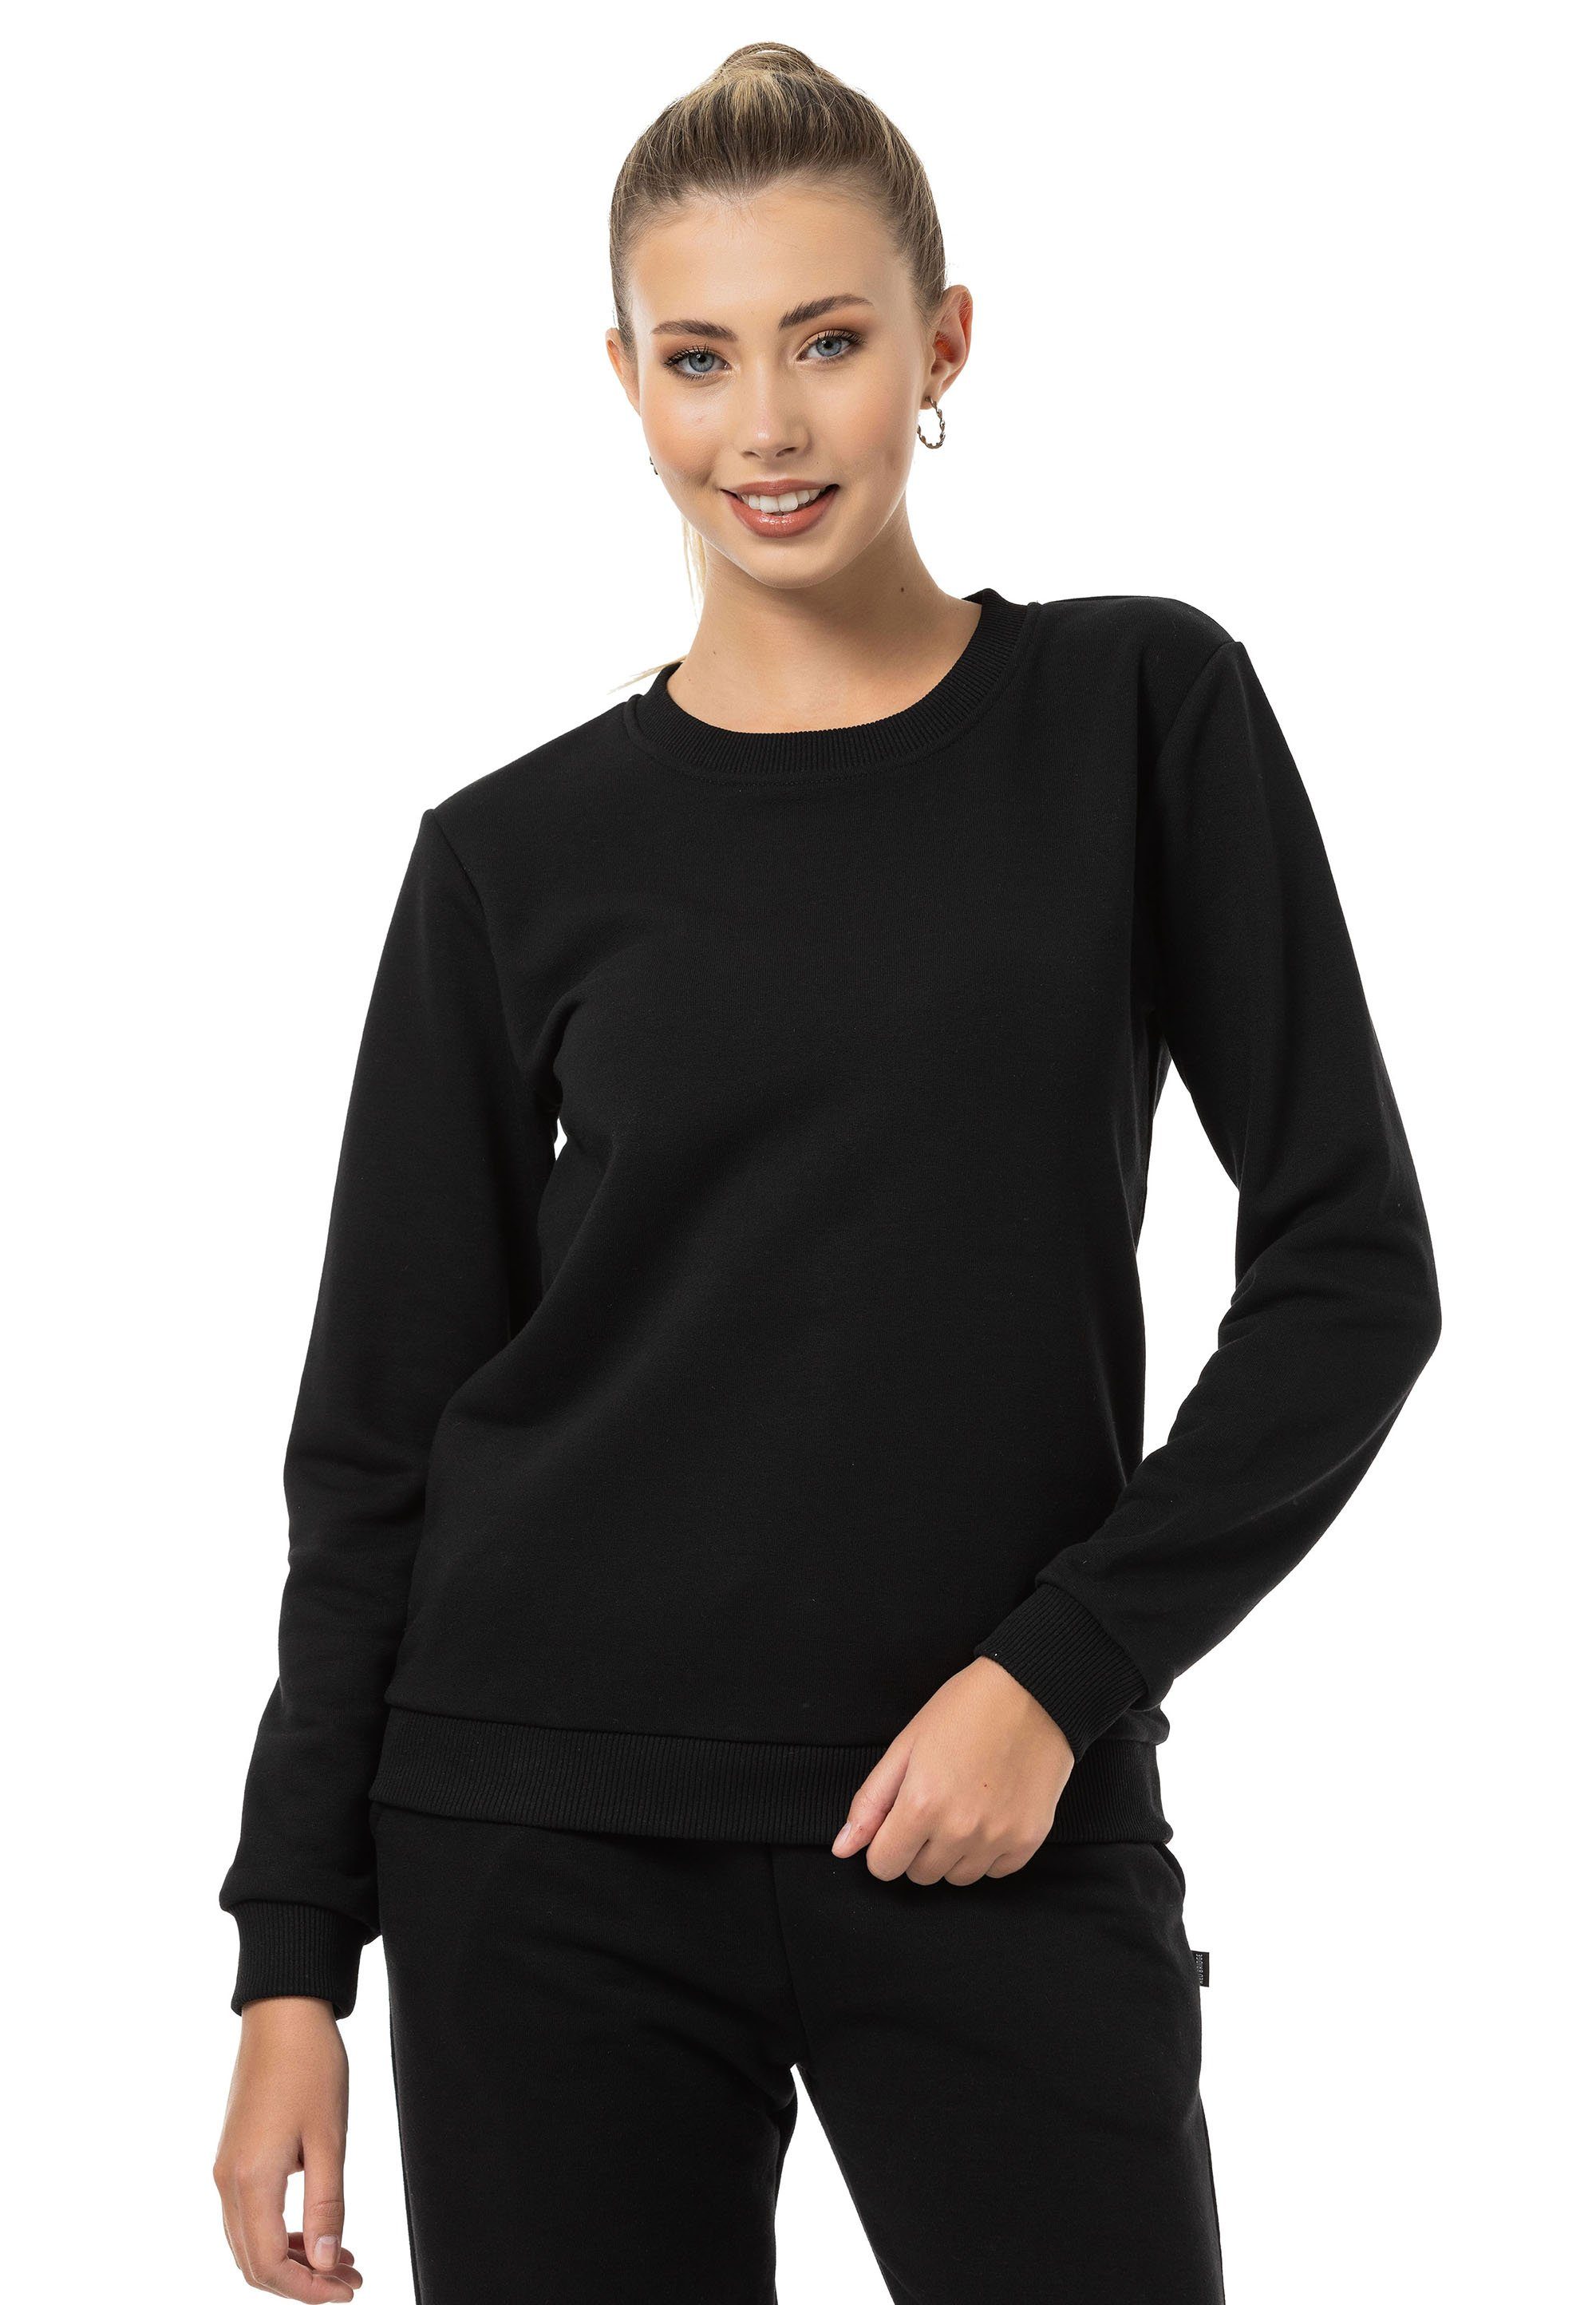 RedBridge Sweatshirt Rundhals Qualität Schwarz Pullover Premium